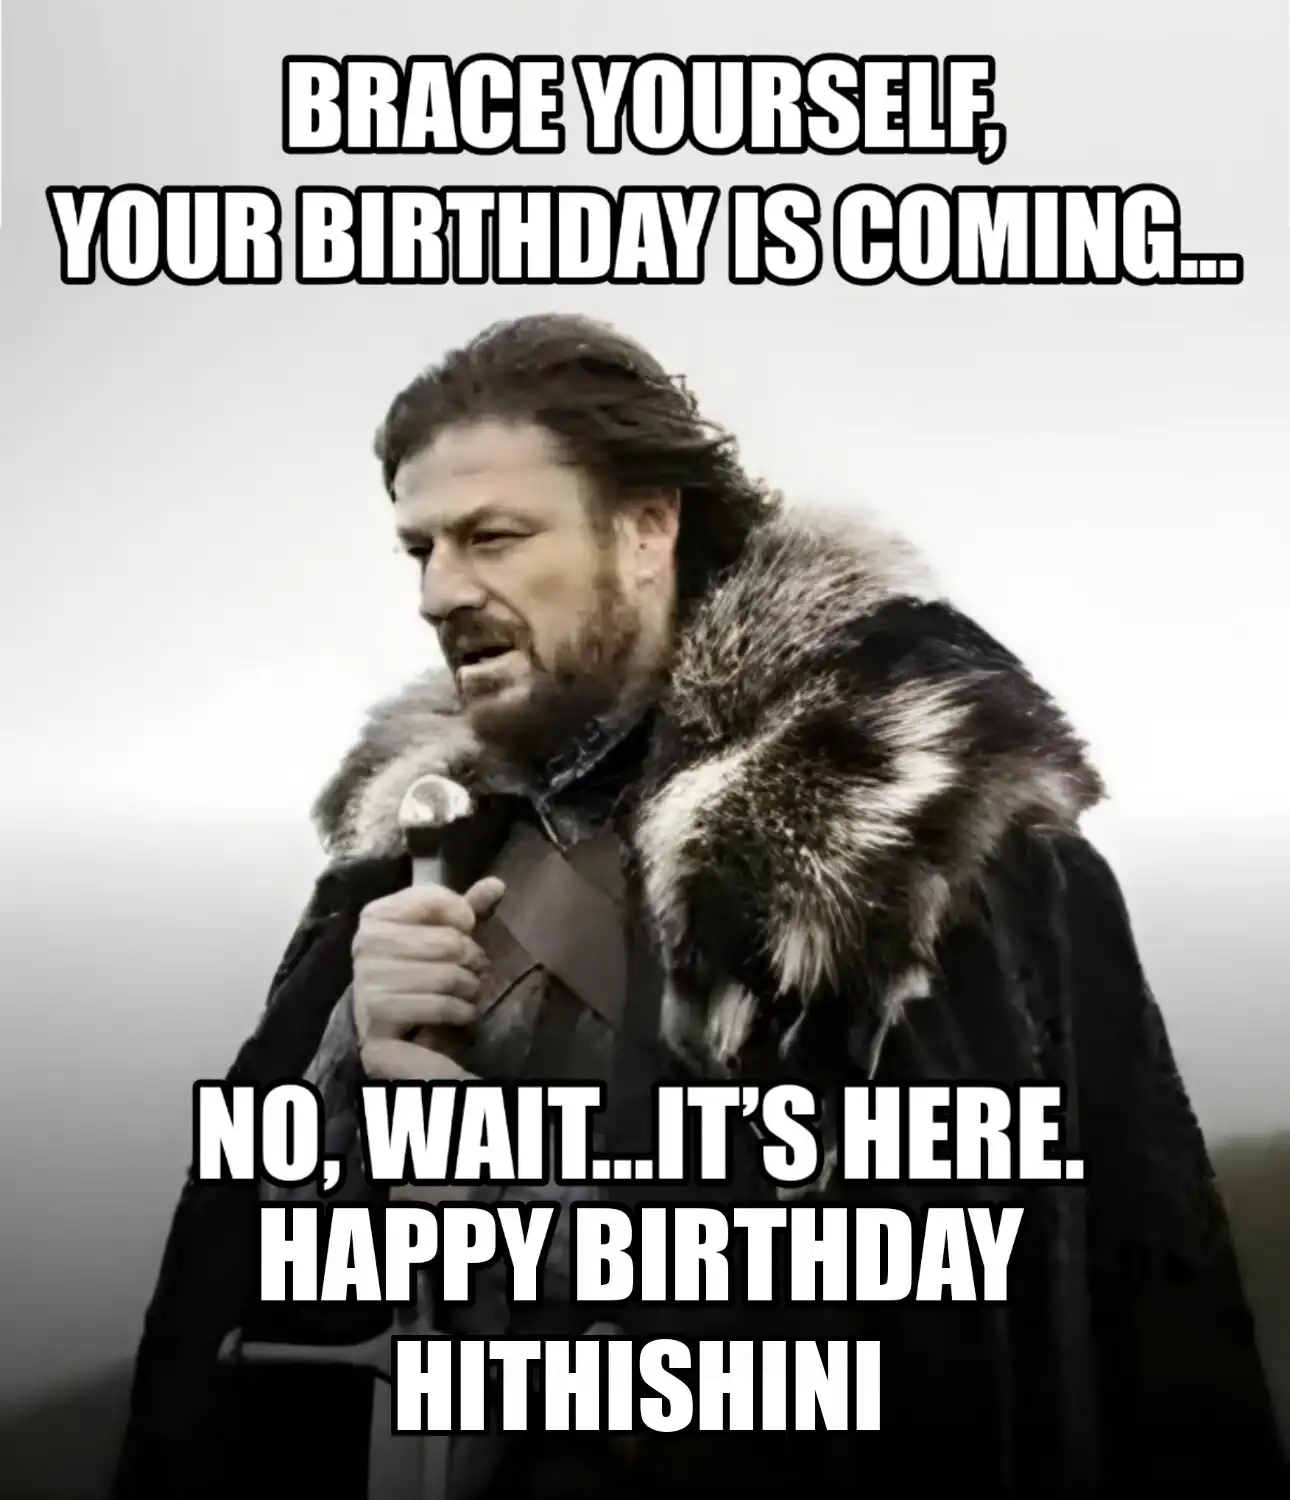 Happy Birthday Hithishini Brace Yourself Your Birthday Is Coming Meme